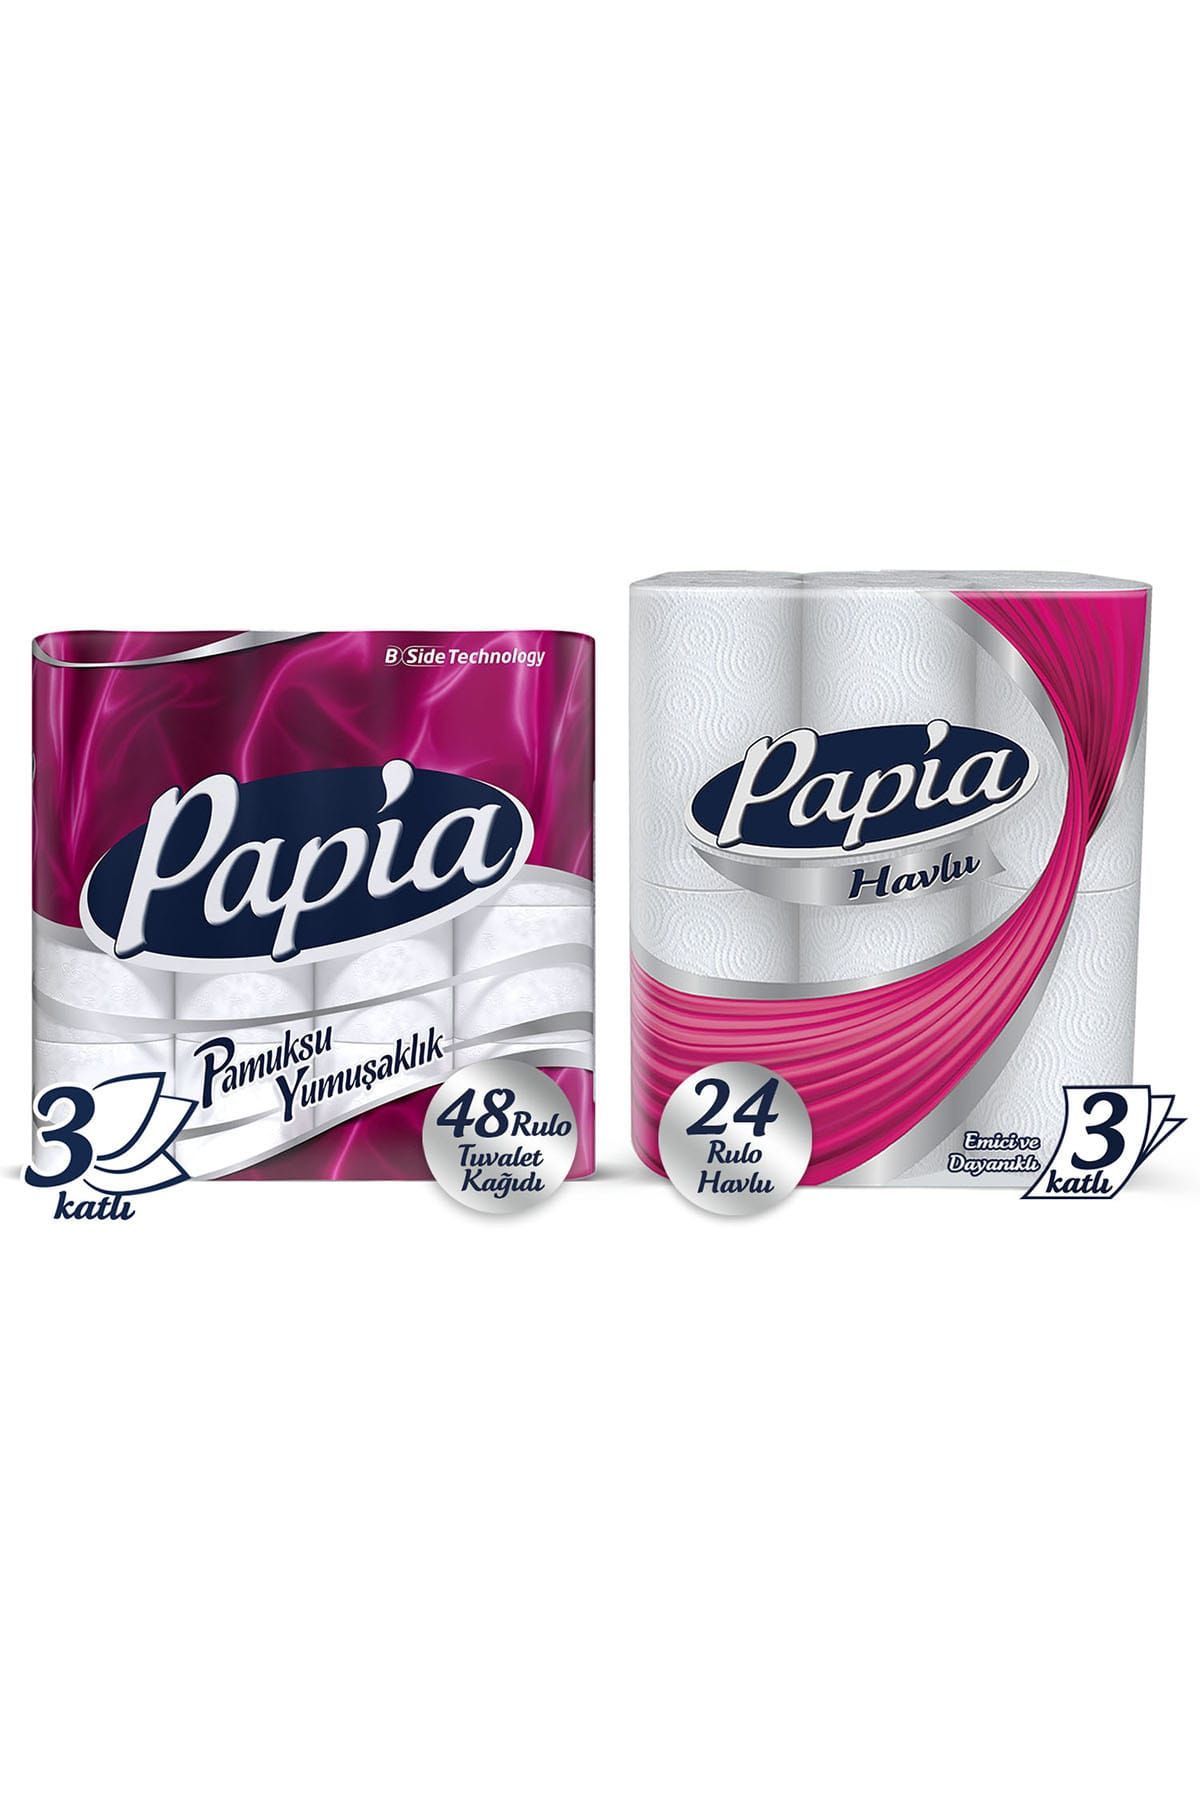 Papia Tuvalet Kağıdı Jumbo Paket 48 Rulo & Papia Kağıt Havlu Jumbo Paket 24 Rulo